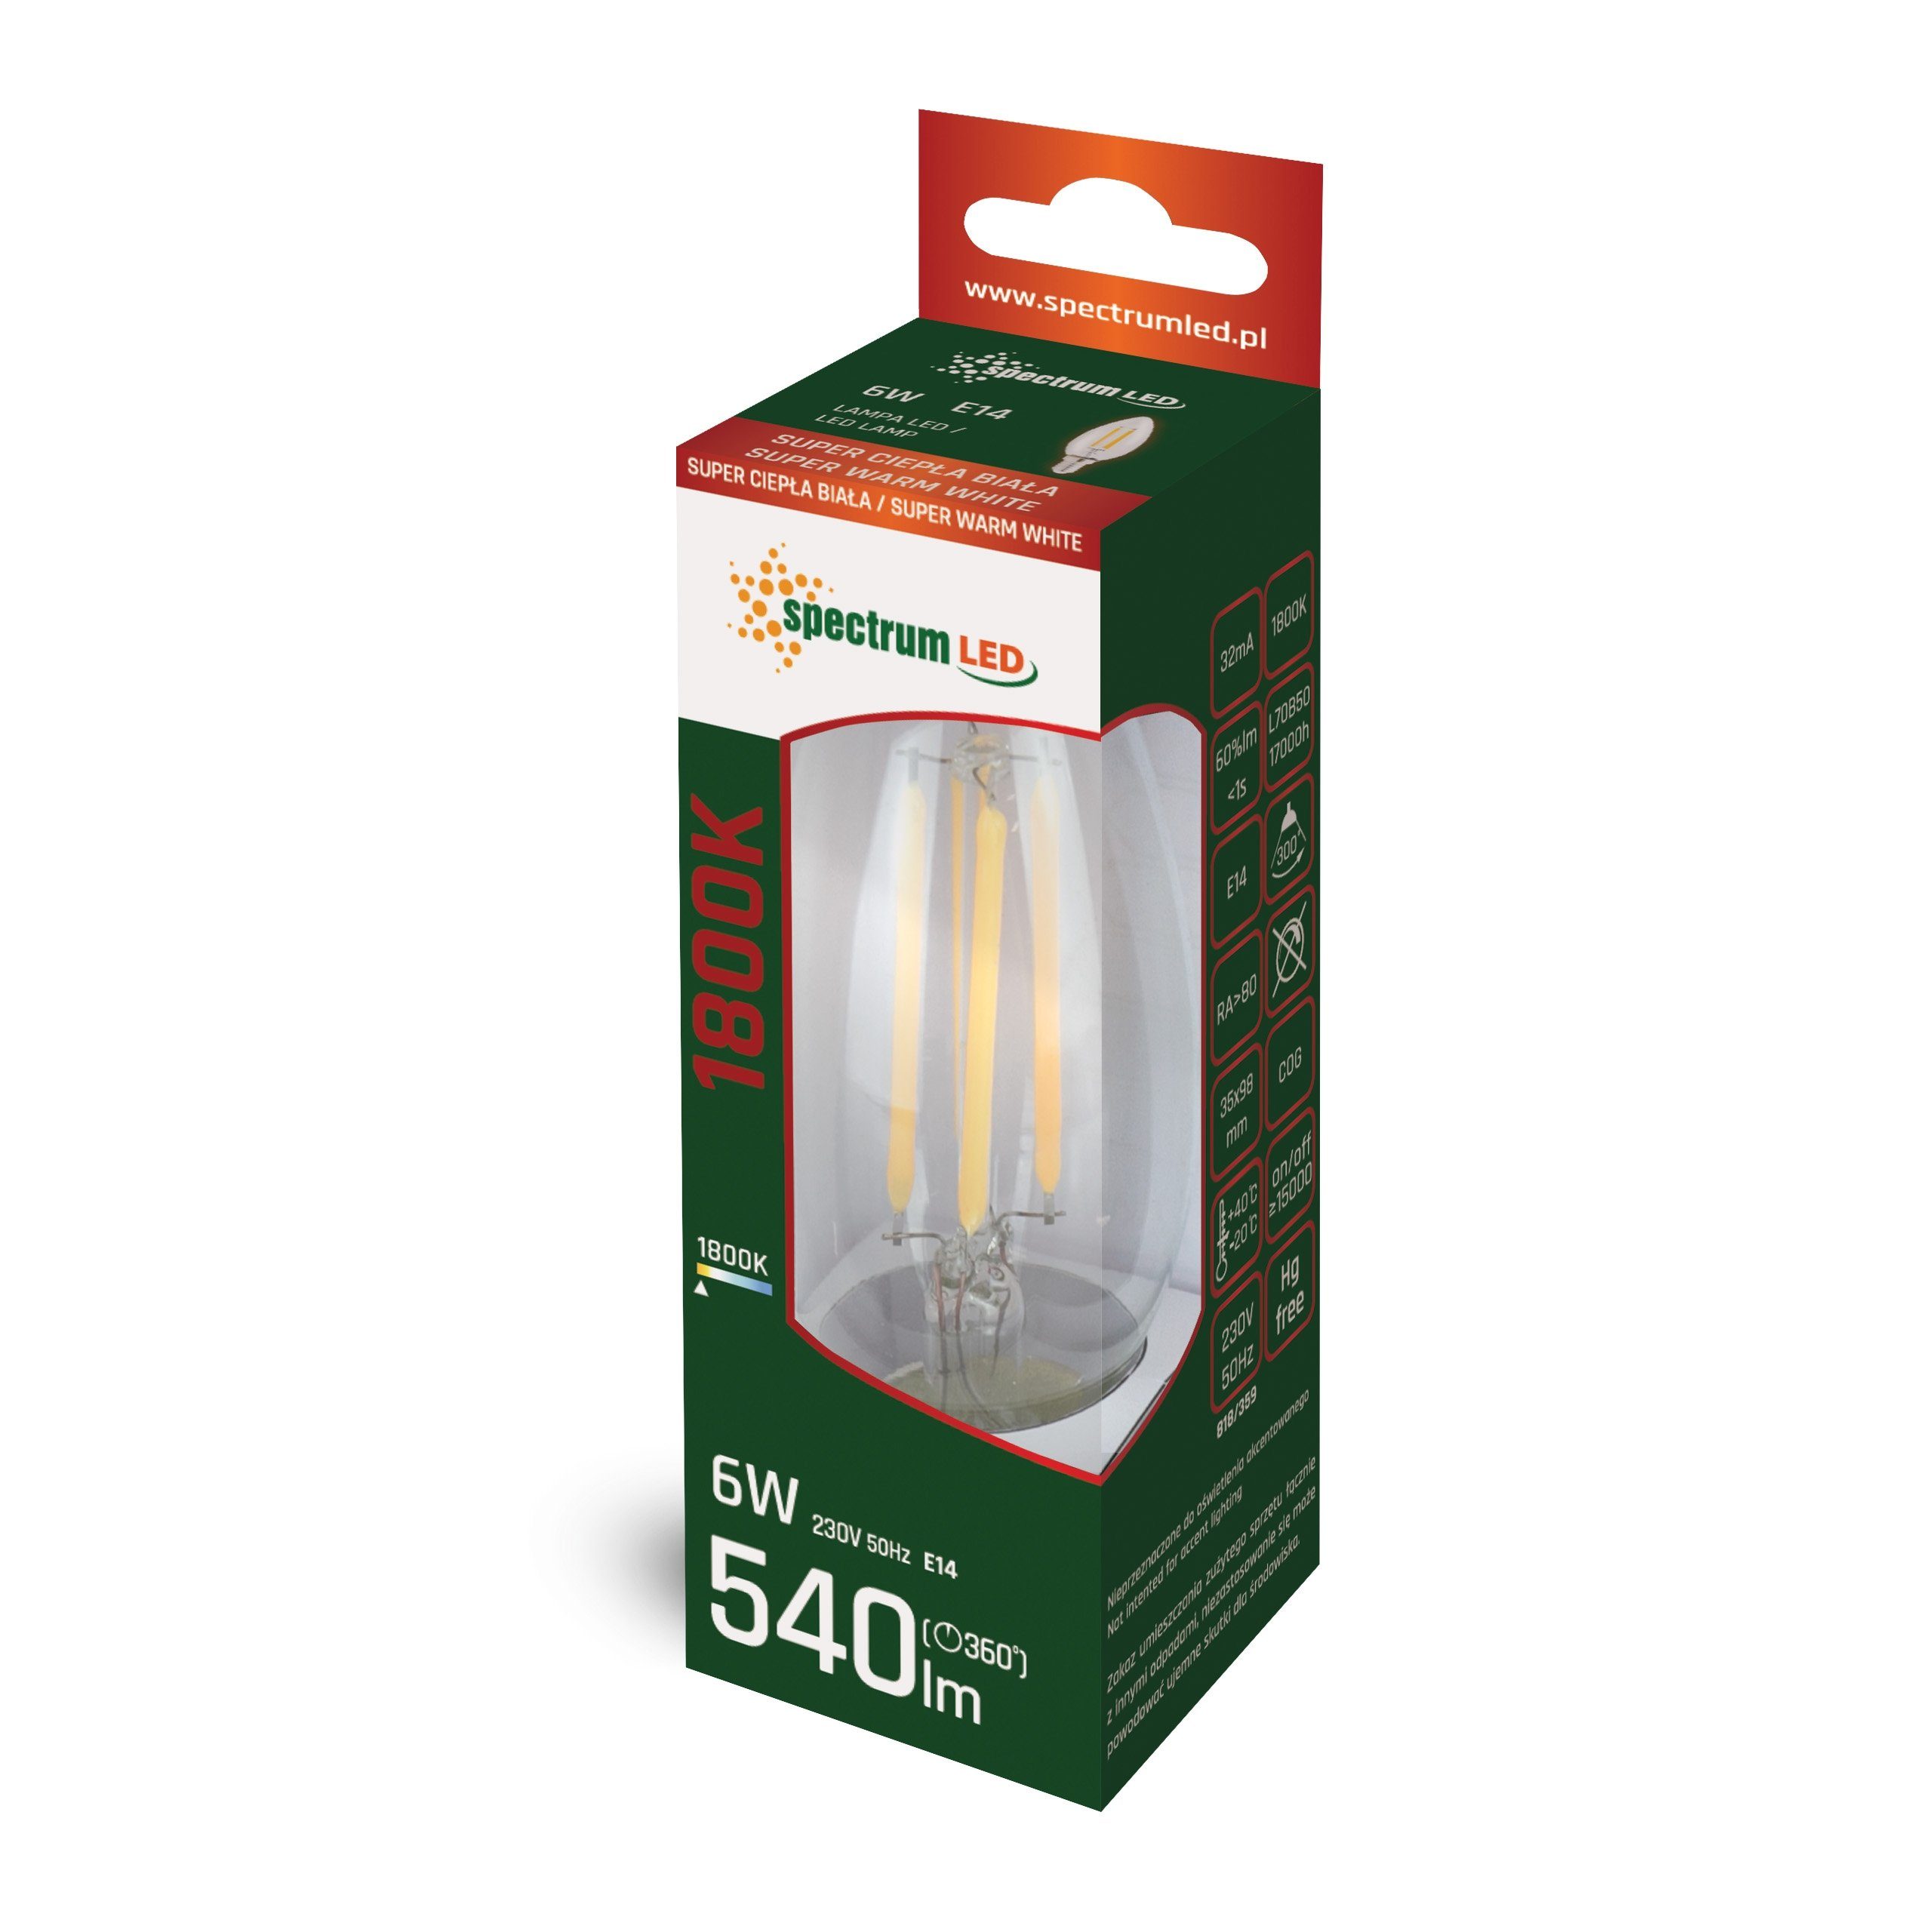 6W E14 SpectrumLED 540lm LED LED-Leuchtmittel Extra Filament C35 300° E14, 1800K, Kerze Warmweiß klar Extra-Warmweiß